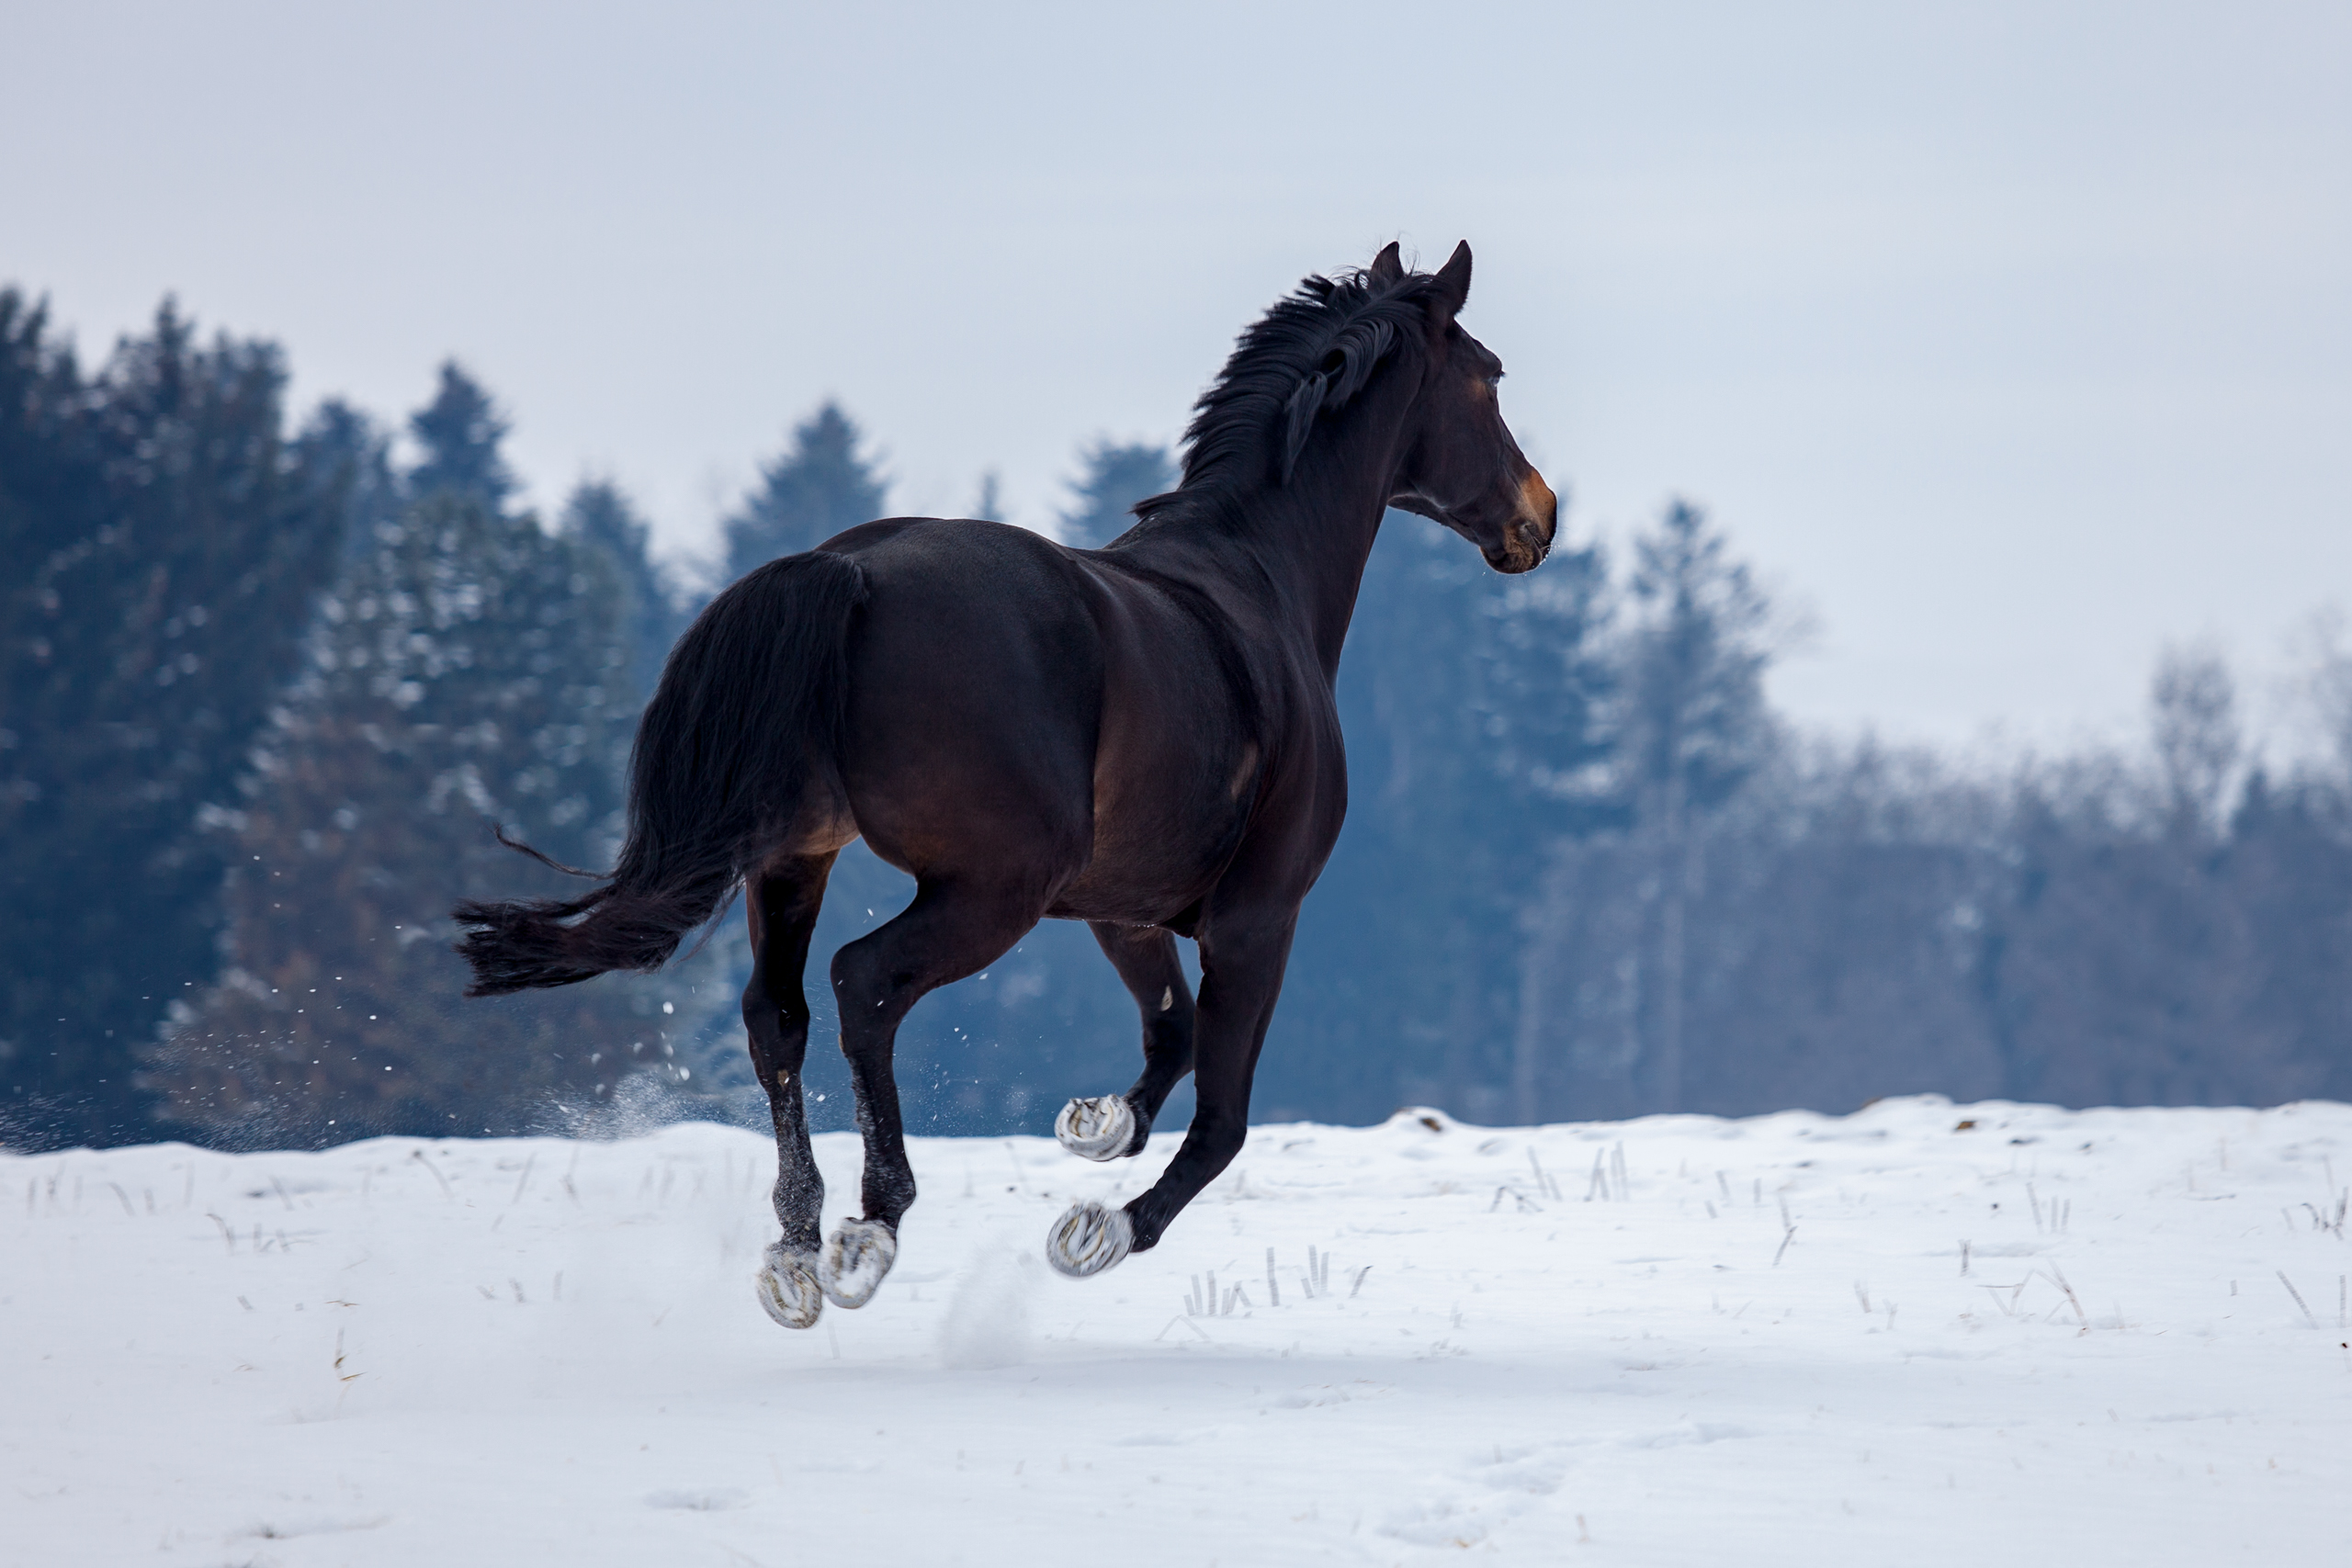 Pferde;Portfolio;Tierfotografie;lumo obscura;outdoor